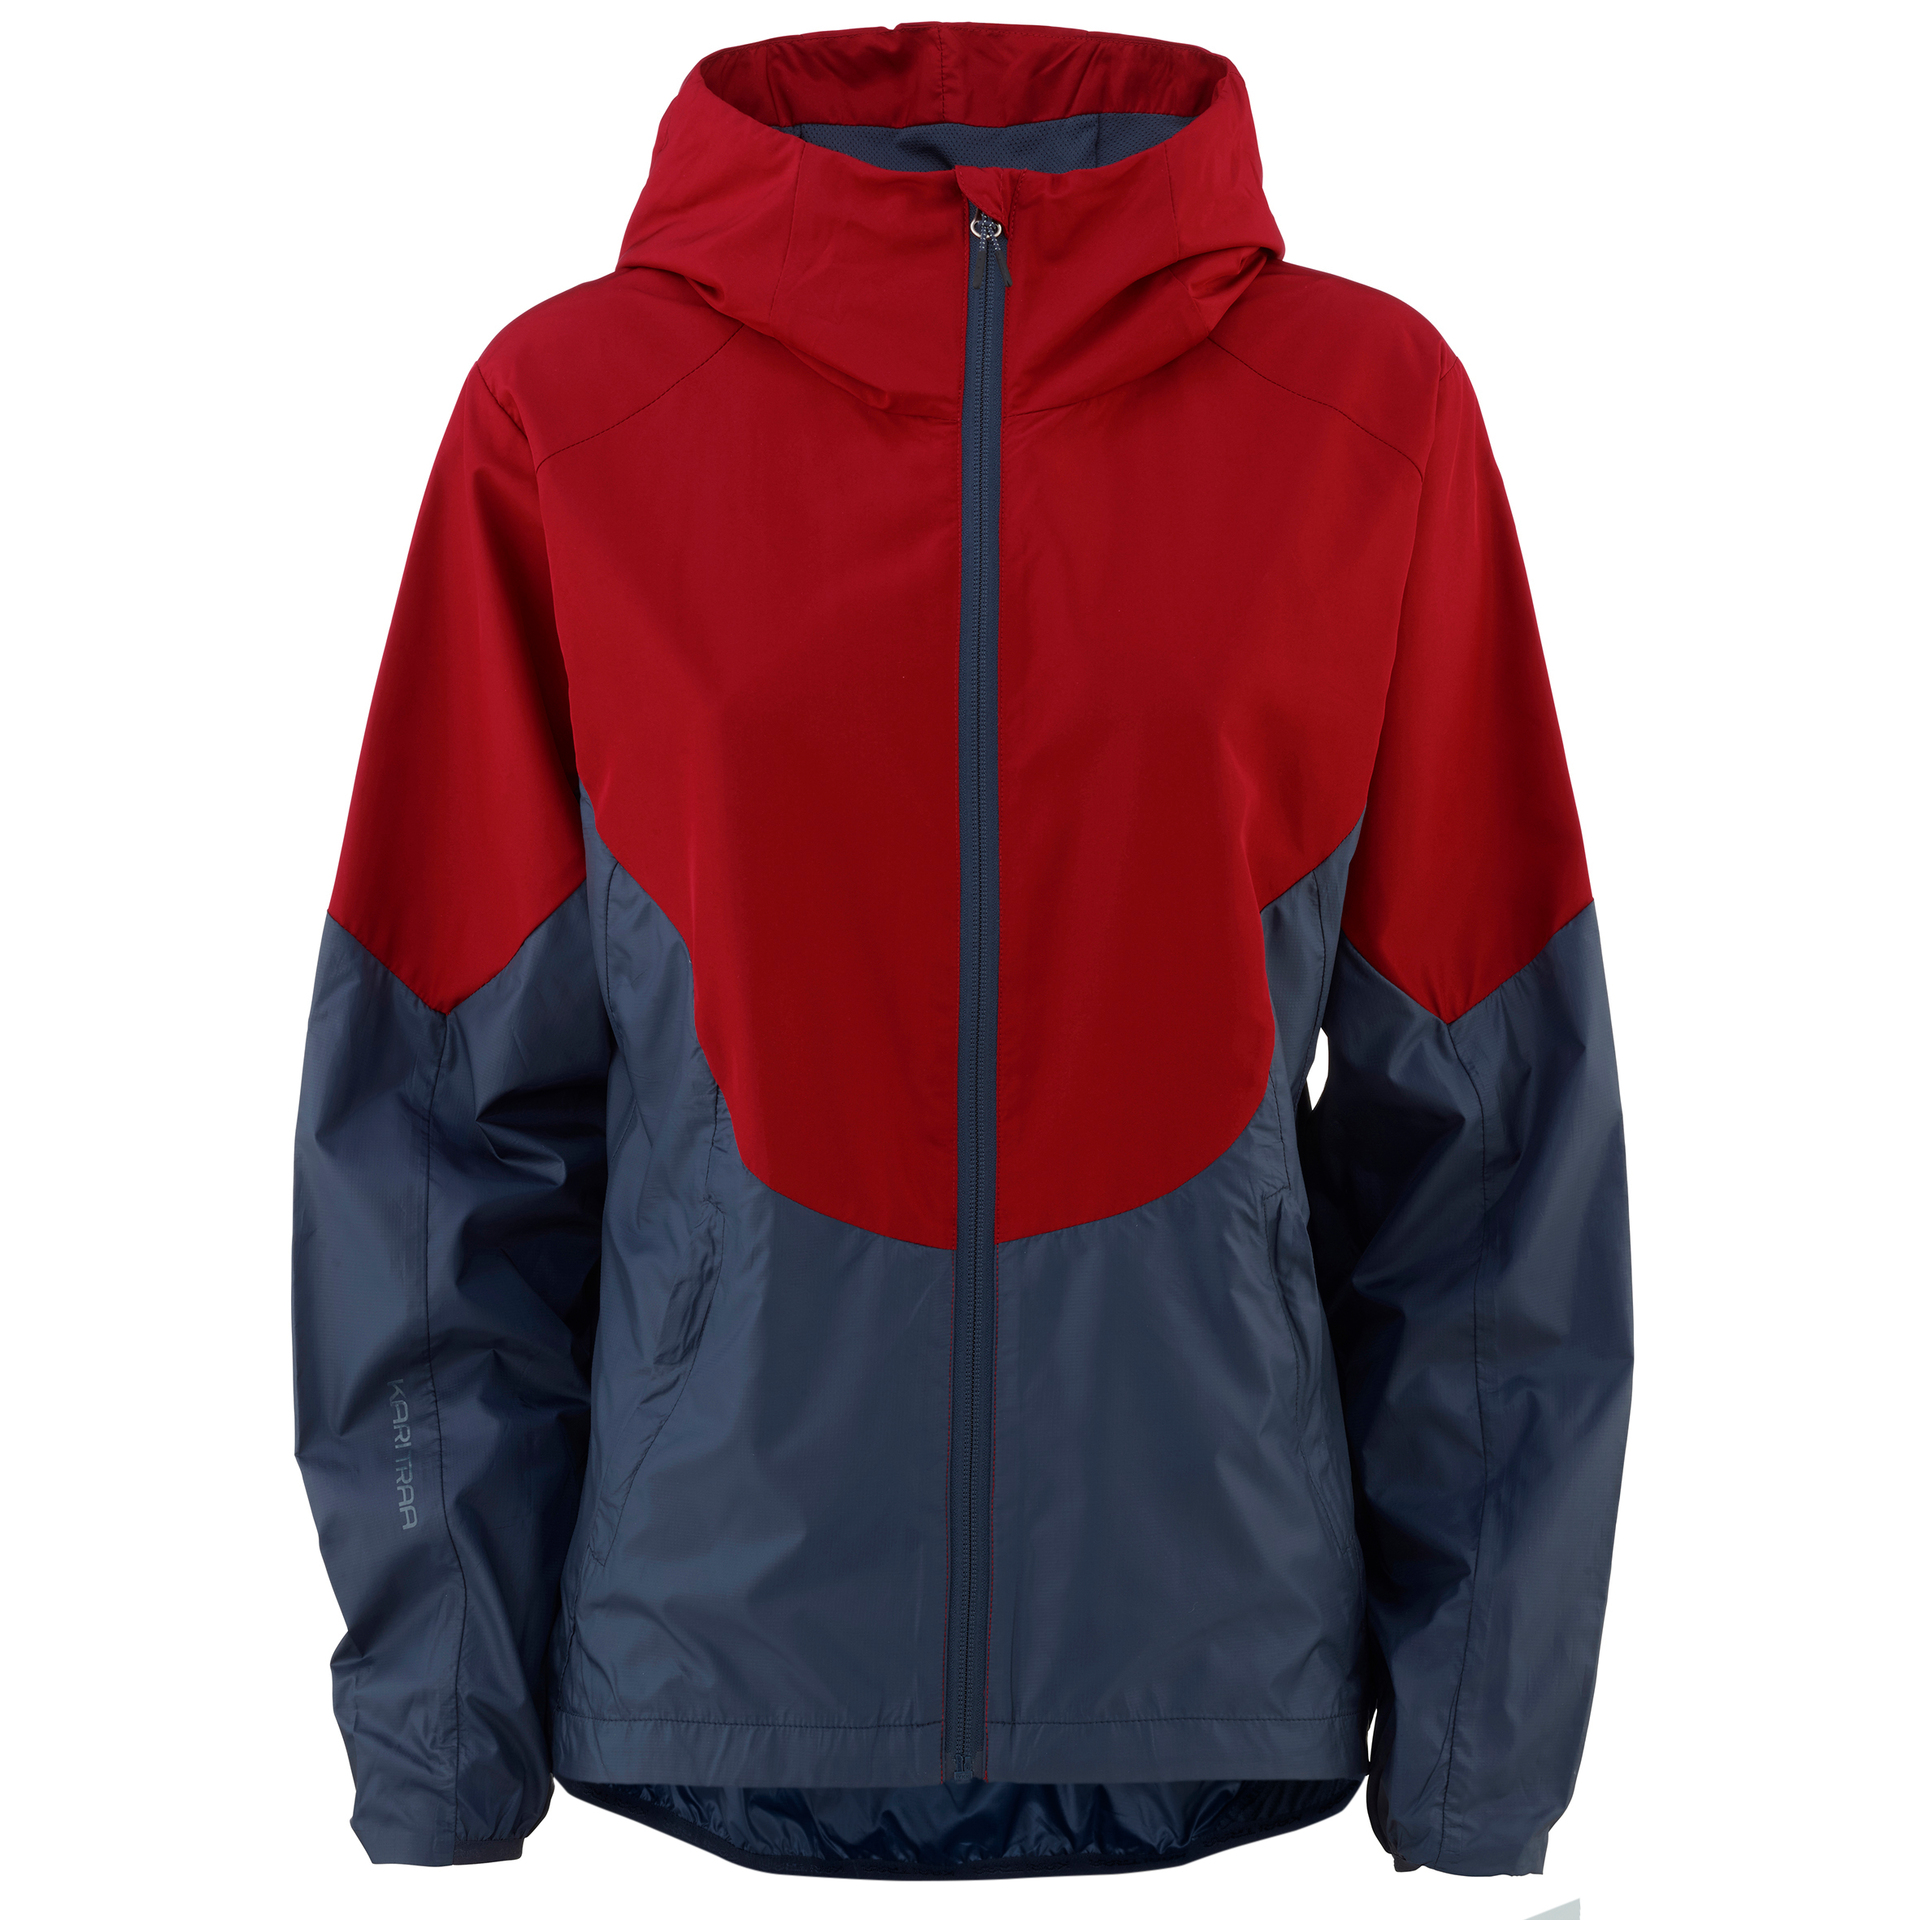 frisliv-kari-traa-sanne-wind-jacket-622982-red-front